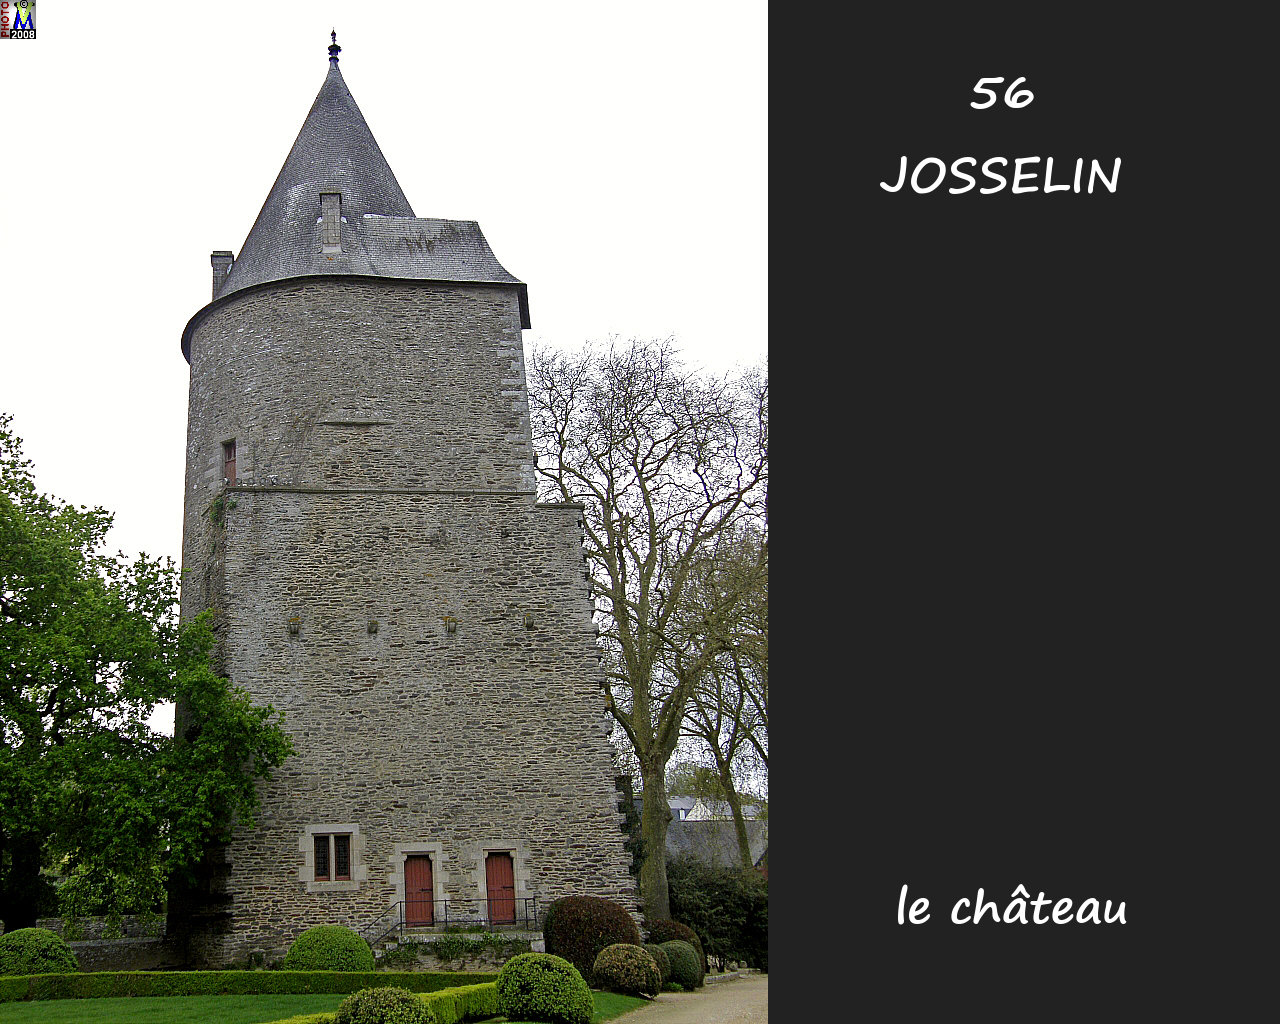 56JOSSELIN_chateau_304.jpg